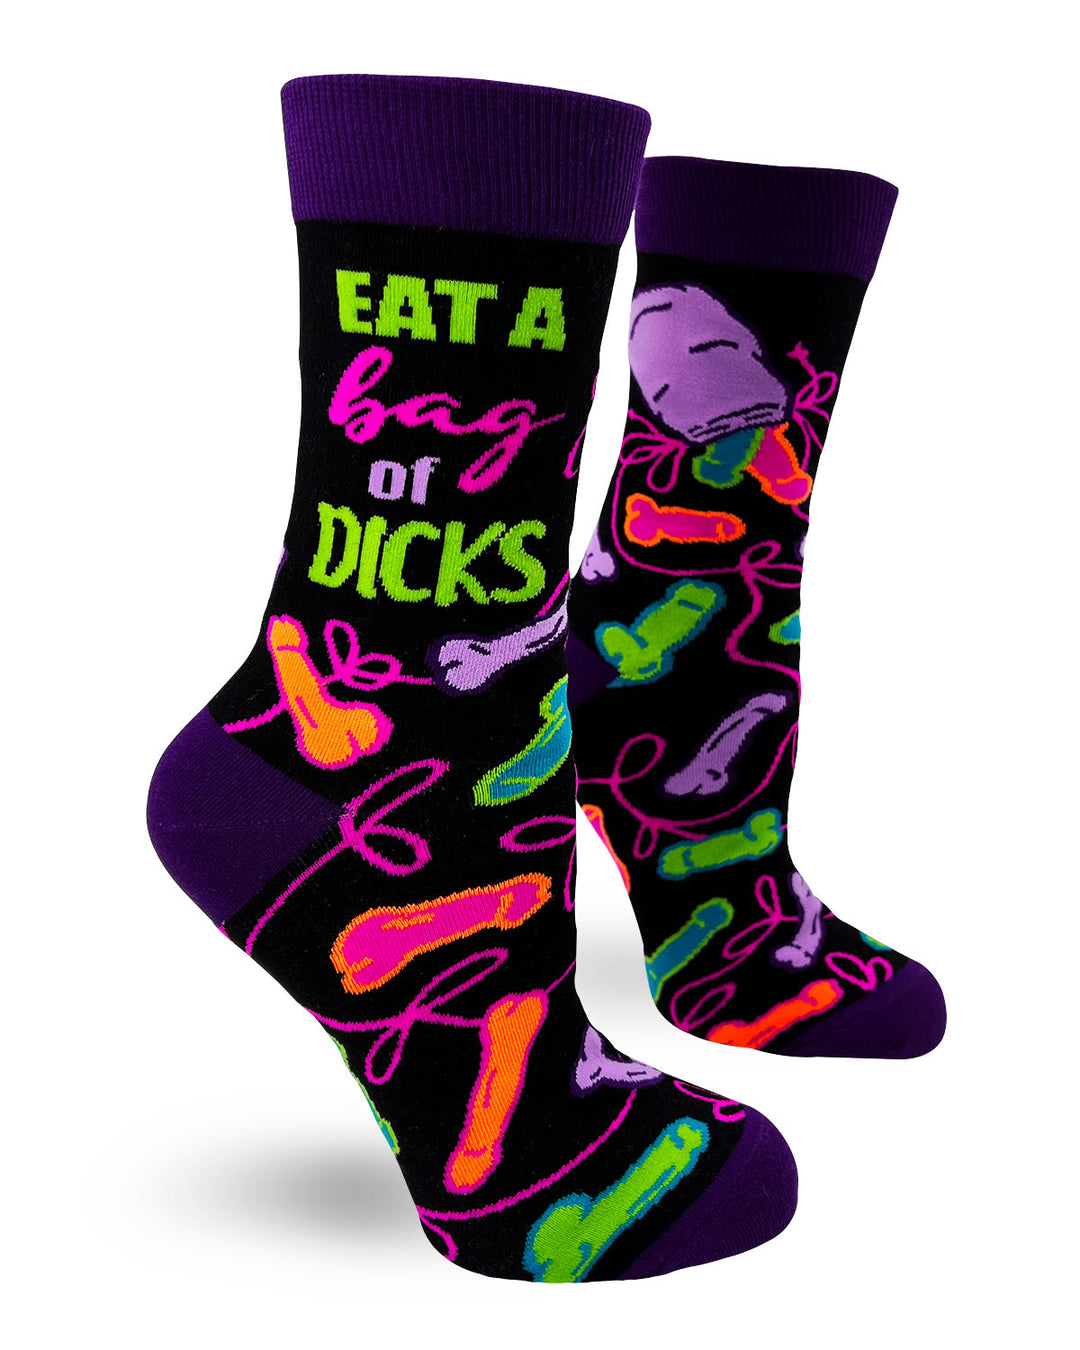 Eat a Bag of Dicks Sassy Women's Novelty Crew Socks